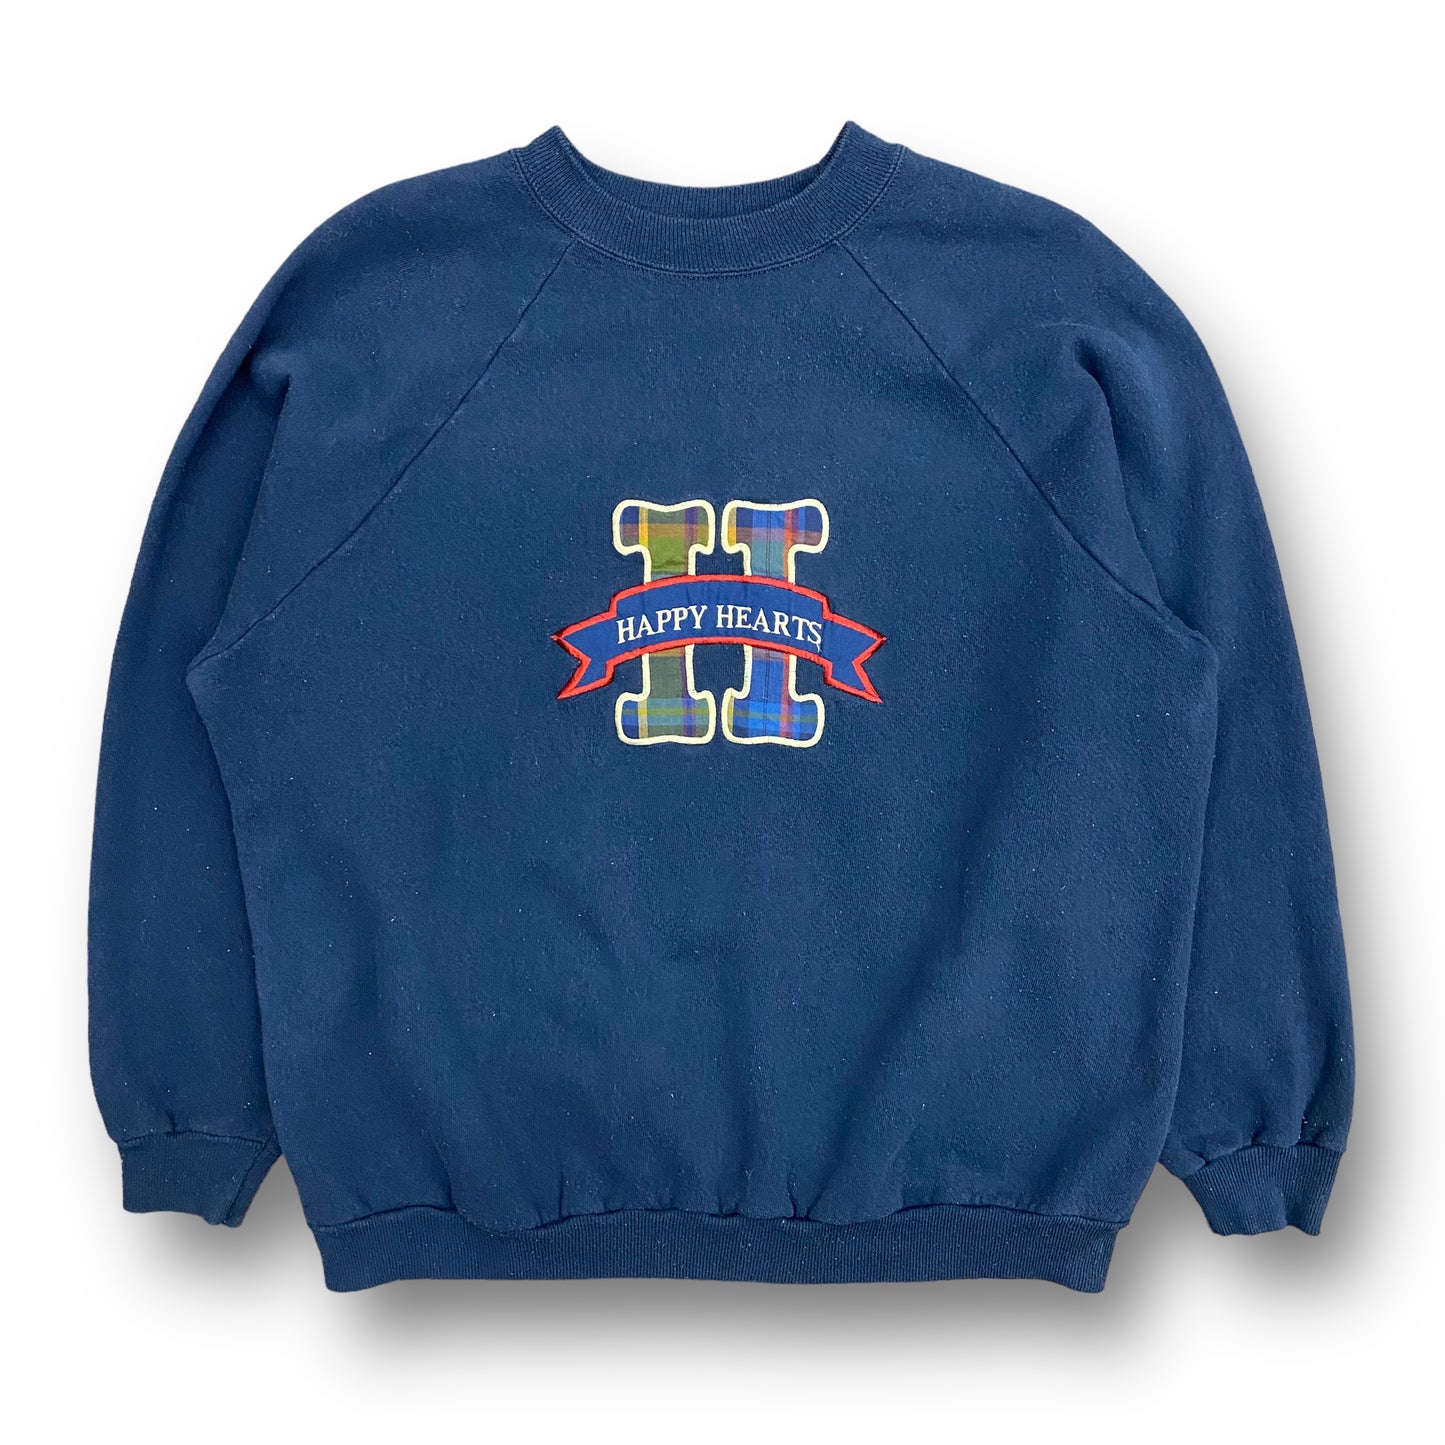 Vintage 90s Happy Hearts Navy Blue Raglan Crewneck Sweatshirt - Size Large